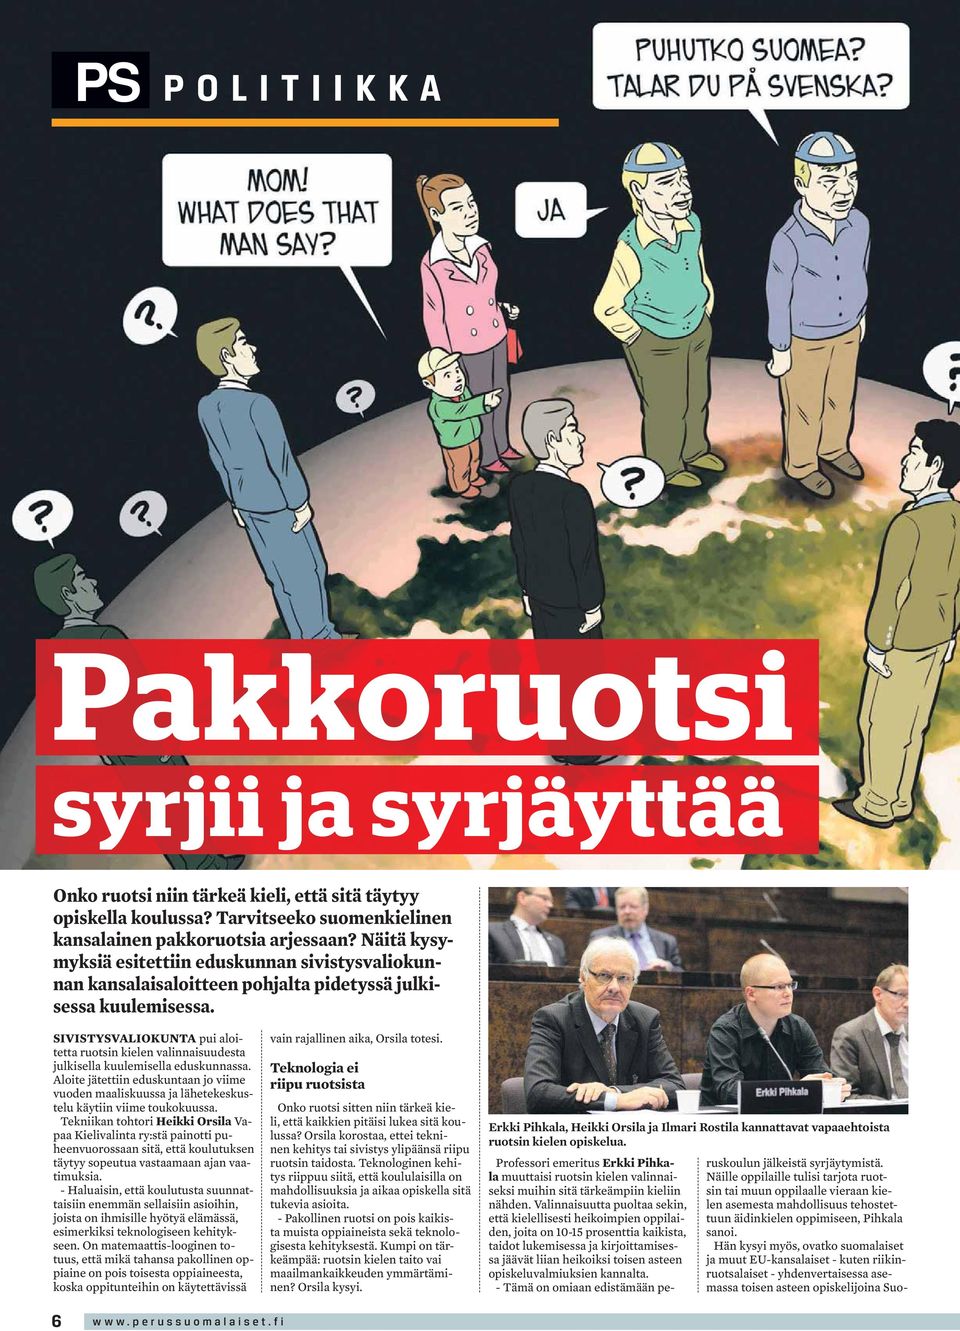 SIVISTYSVALIOKUNTA pui aloitetta ruotsin kielen valinnaisuudesta julkisella kuulemisella eduskunnassa.